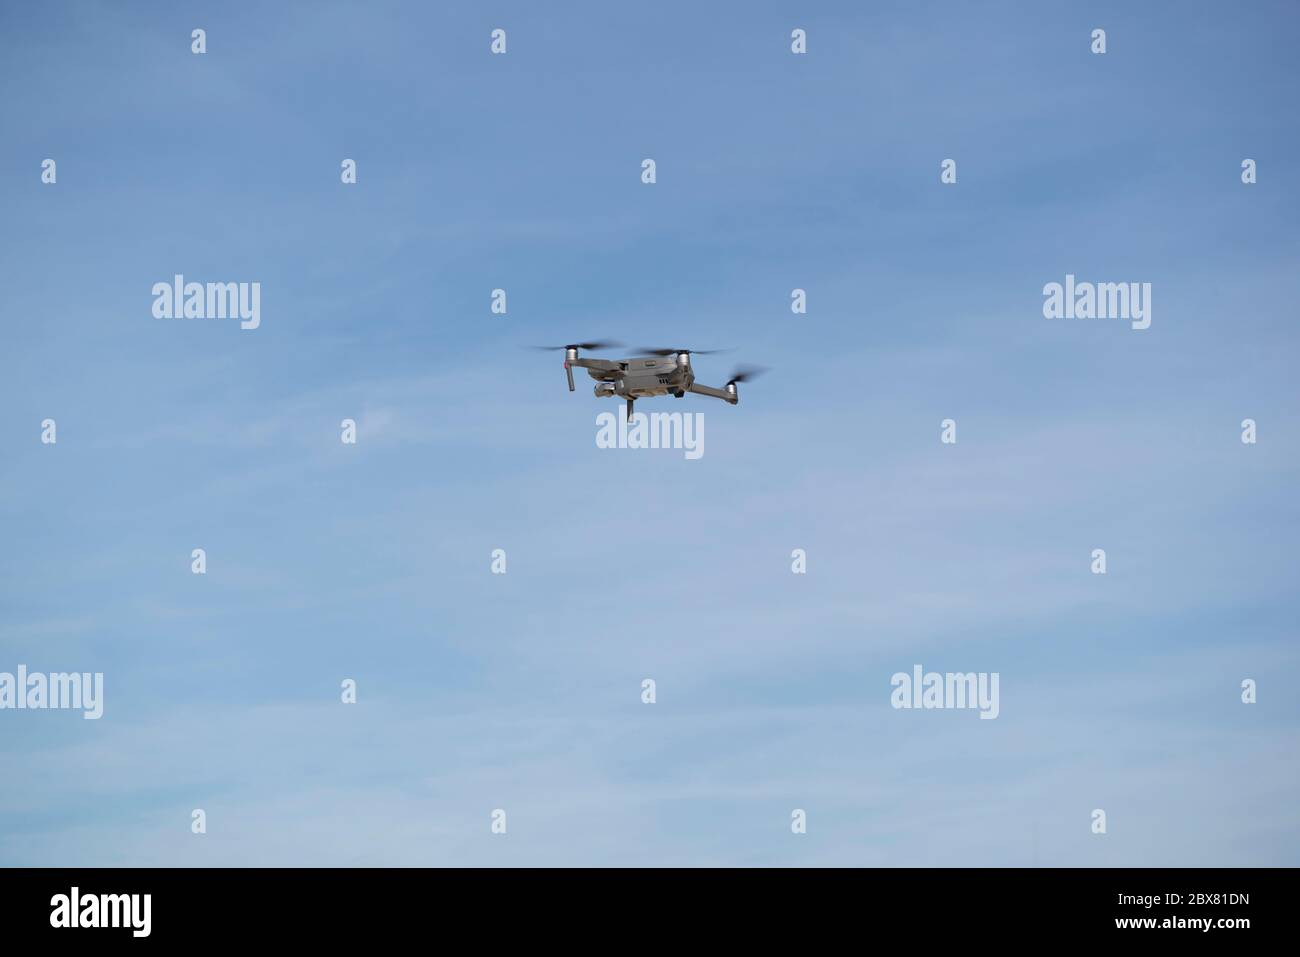 Drohne fliegt in blauem Himmel mit Wolken im Hintergrund. Drohne fliegt über dem Himmel in wolkig-blauem Himmel. Drohne Quad Copter mit hochauflösender digitaler Kamera Stockfoto